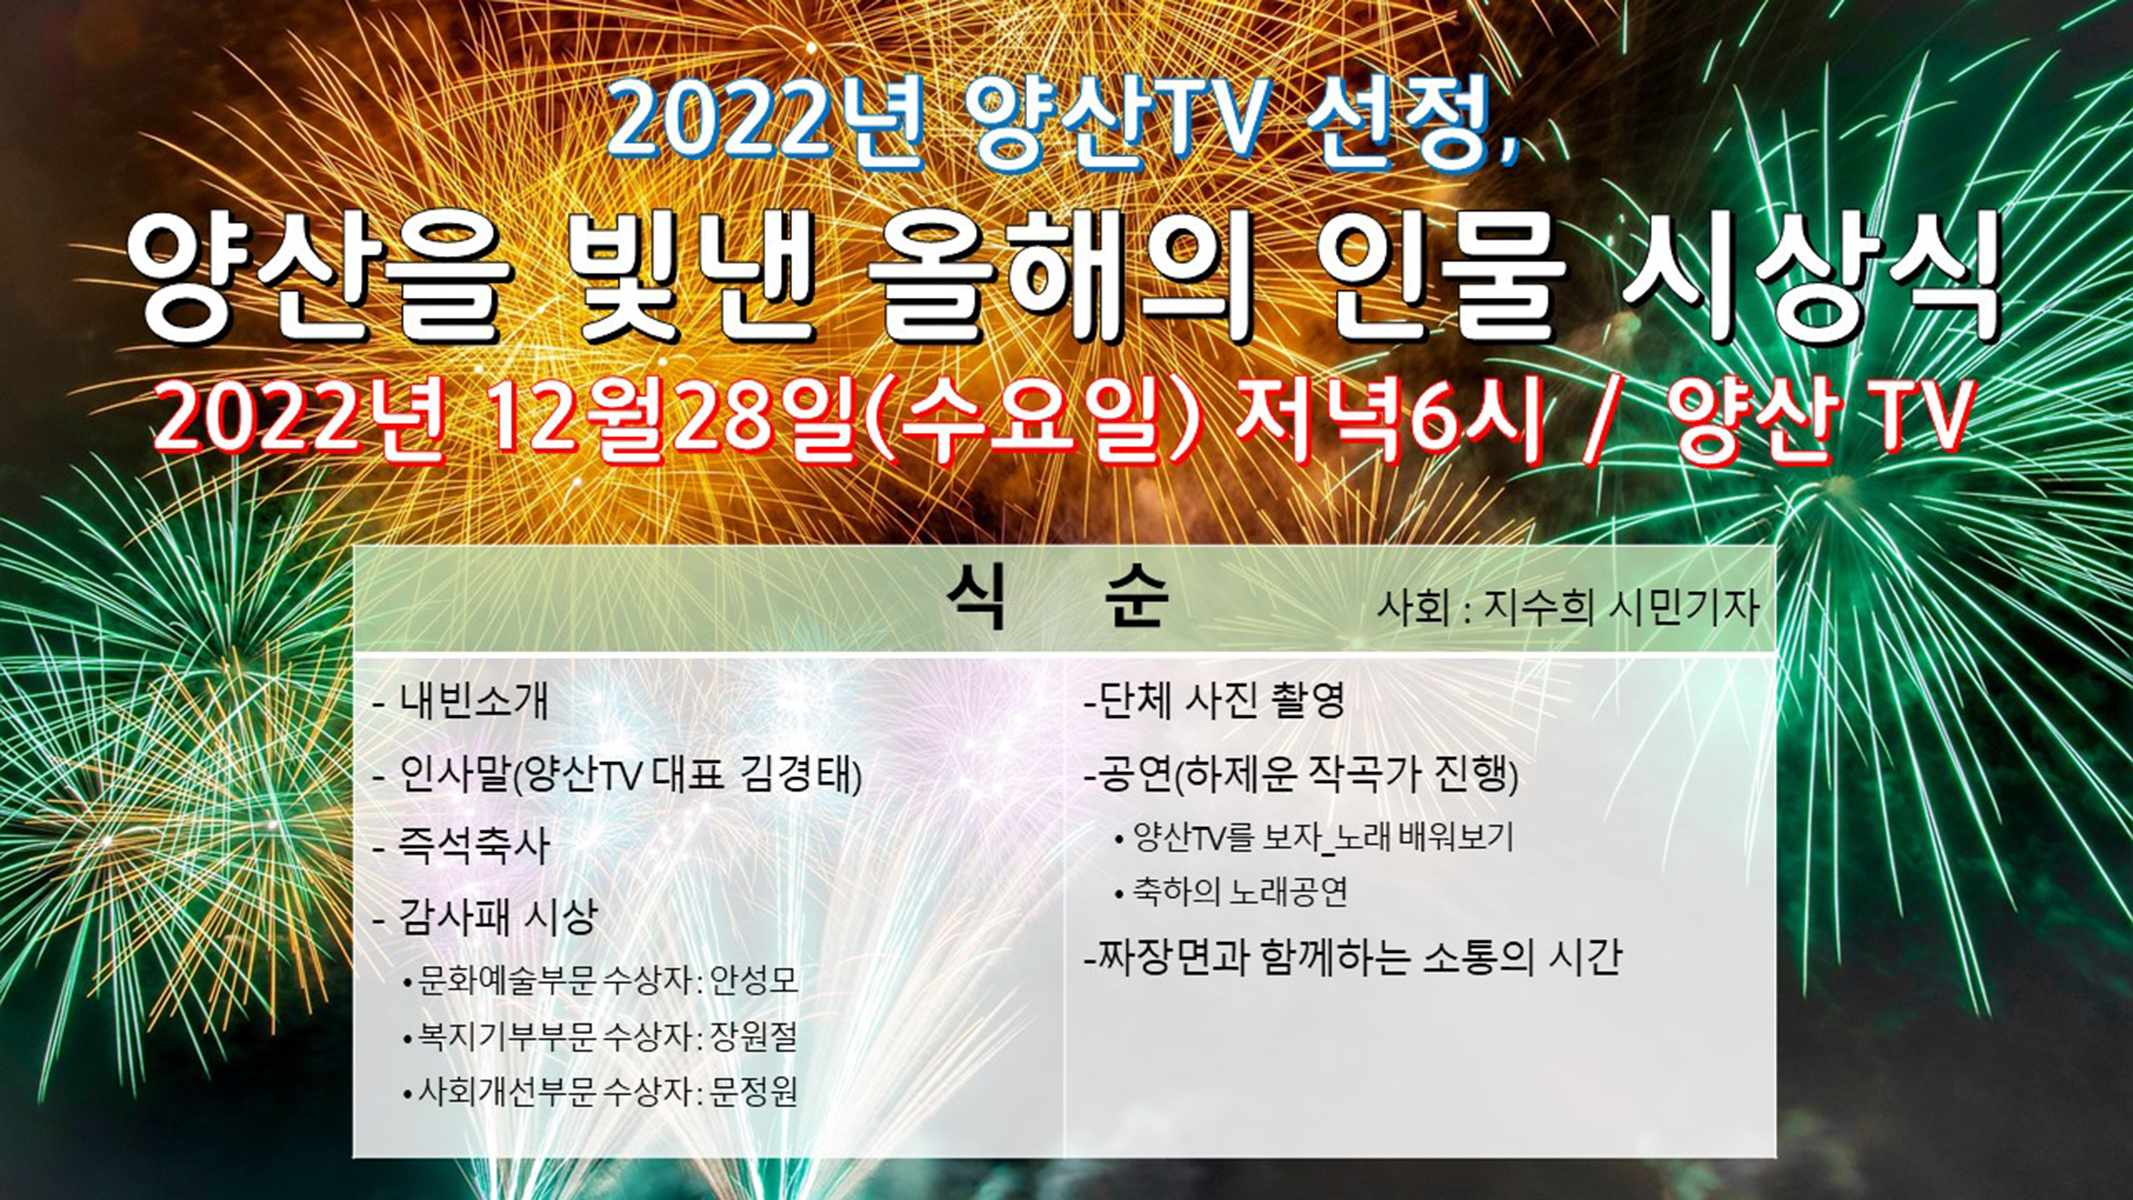 양산TV 선정, 양산을 빛낸 올해의 인물(2022년)